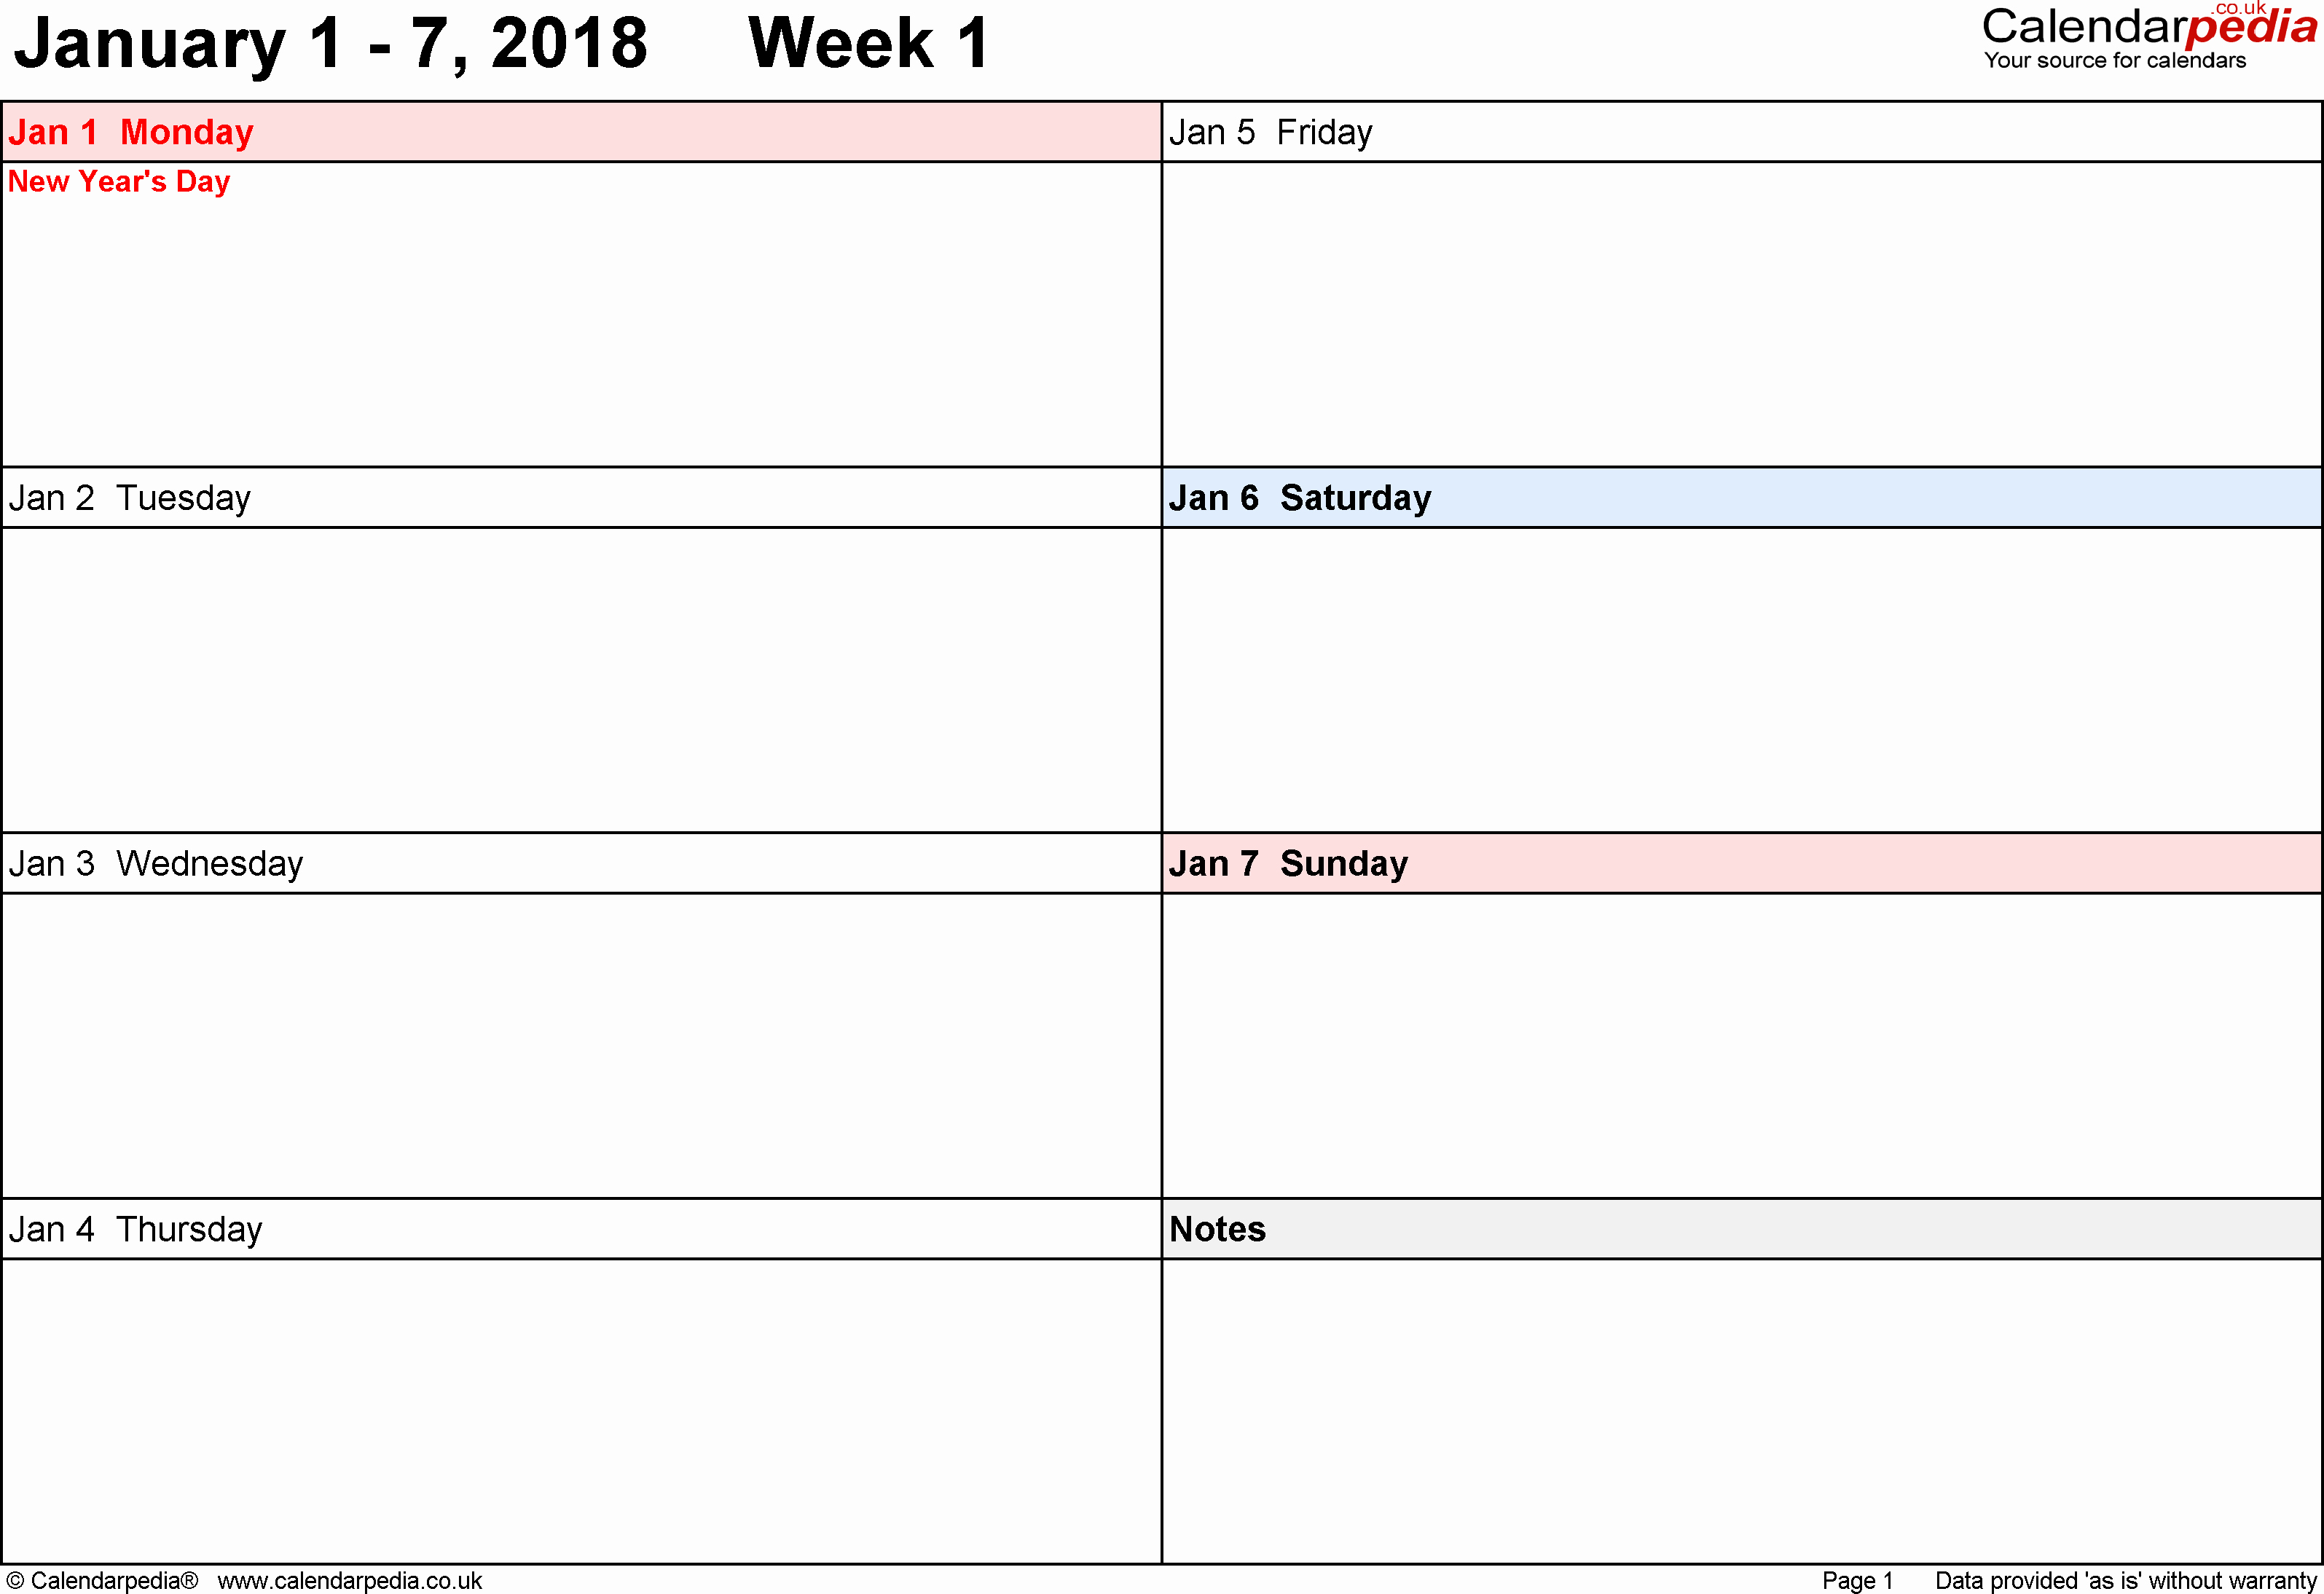 Week by Week Calendar Template New Weekly Calendar 2018 Uk Free Printable Templates for Word